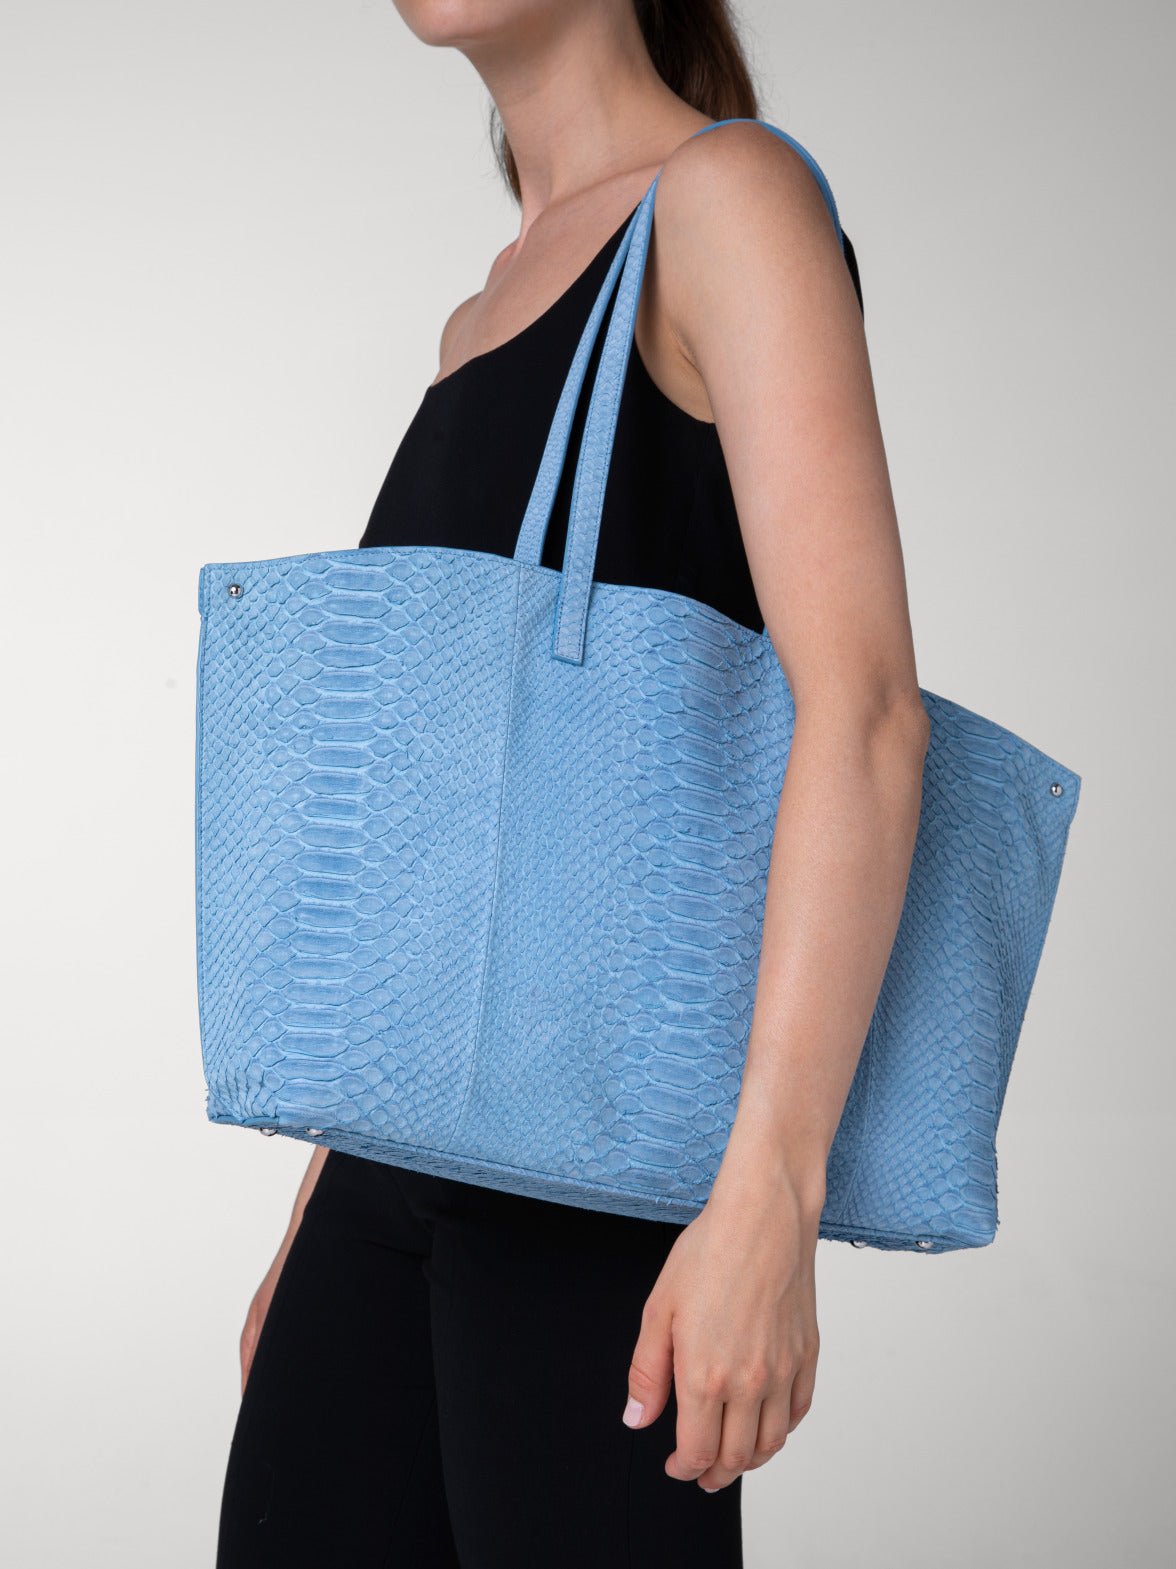 Blue Croc Print Shopper Bag / Blue Leather Bag / Blue 